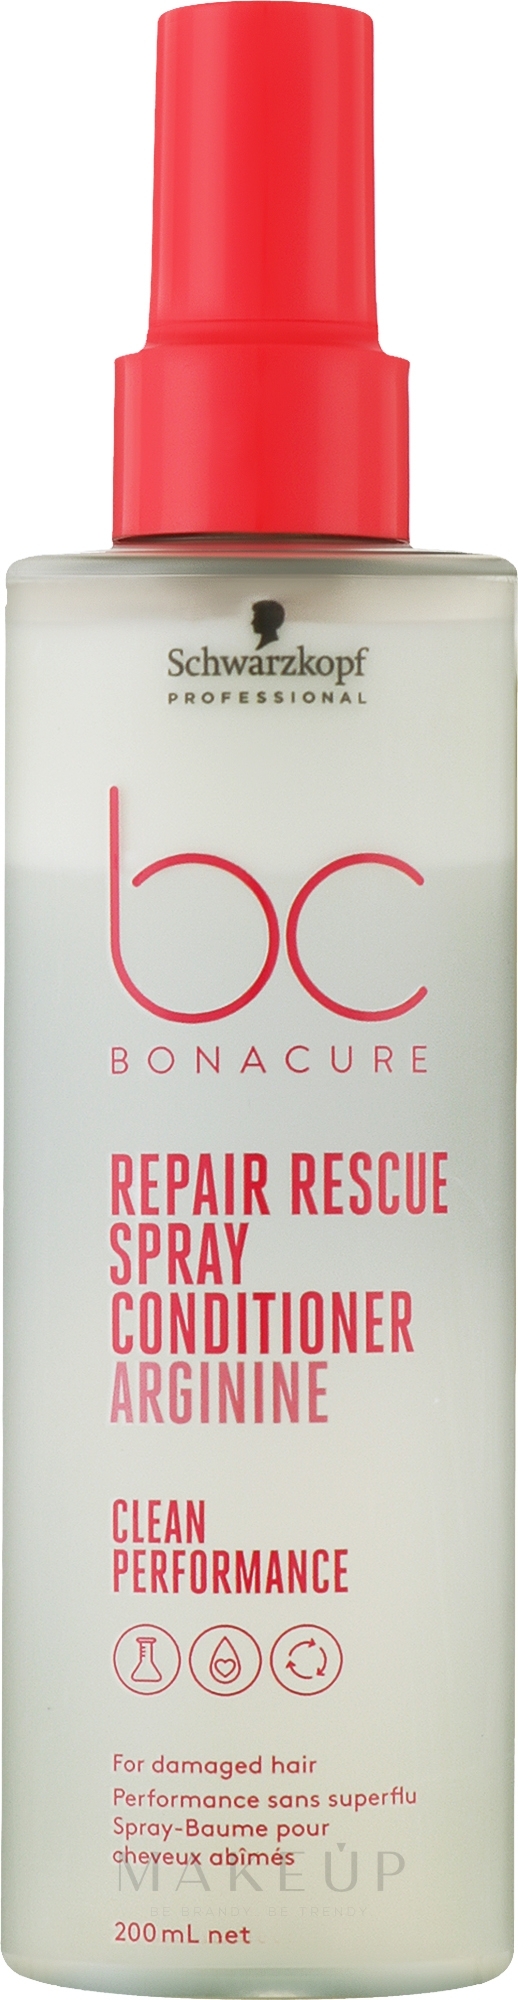 Conditioner-Spray mit Arginin für geschädigtes Haar - Schwarzkopf Professional Bonacure Repair Rescue Spray Conditioner Arginine — Bild 200 ml